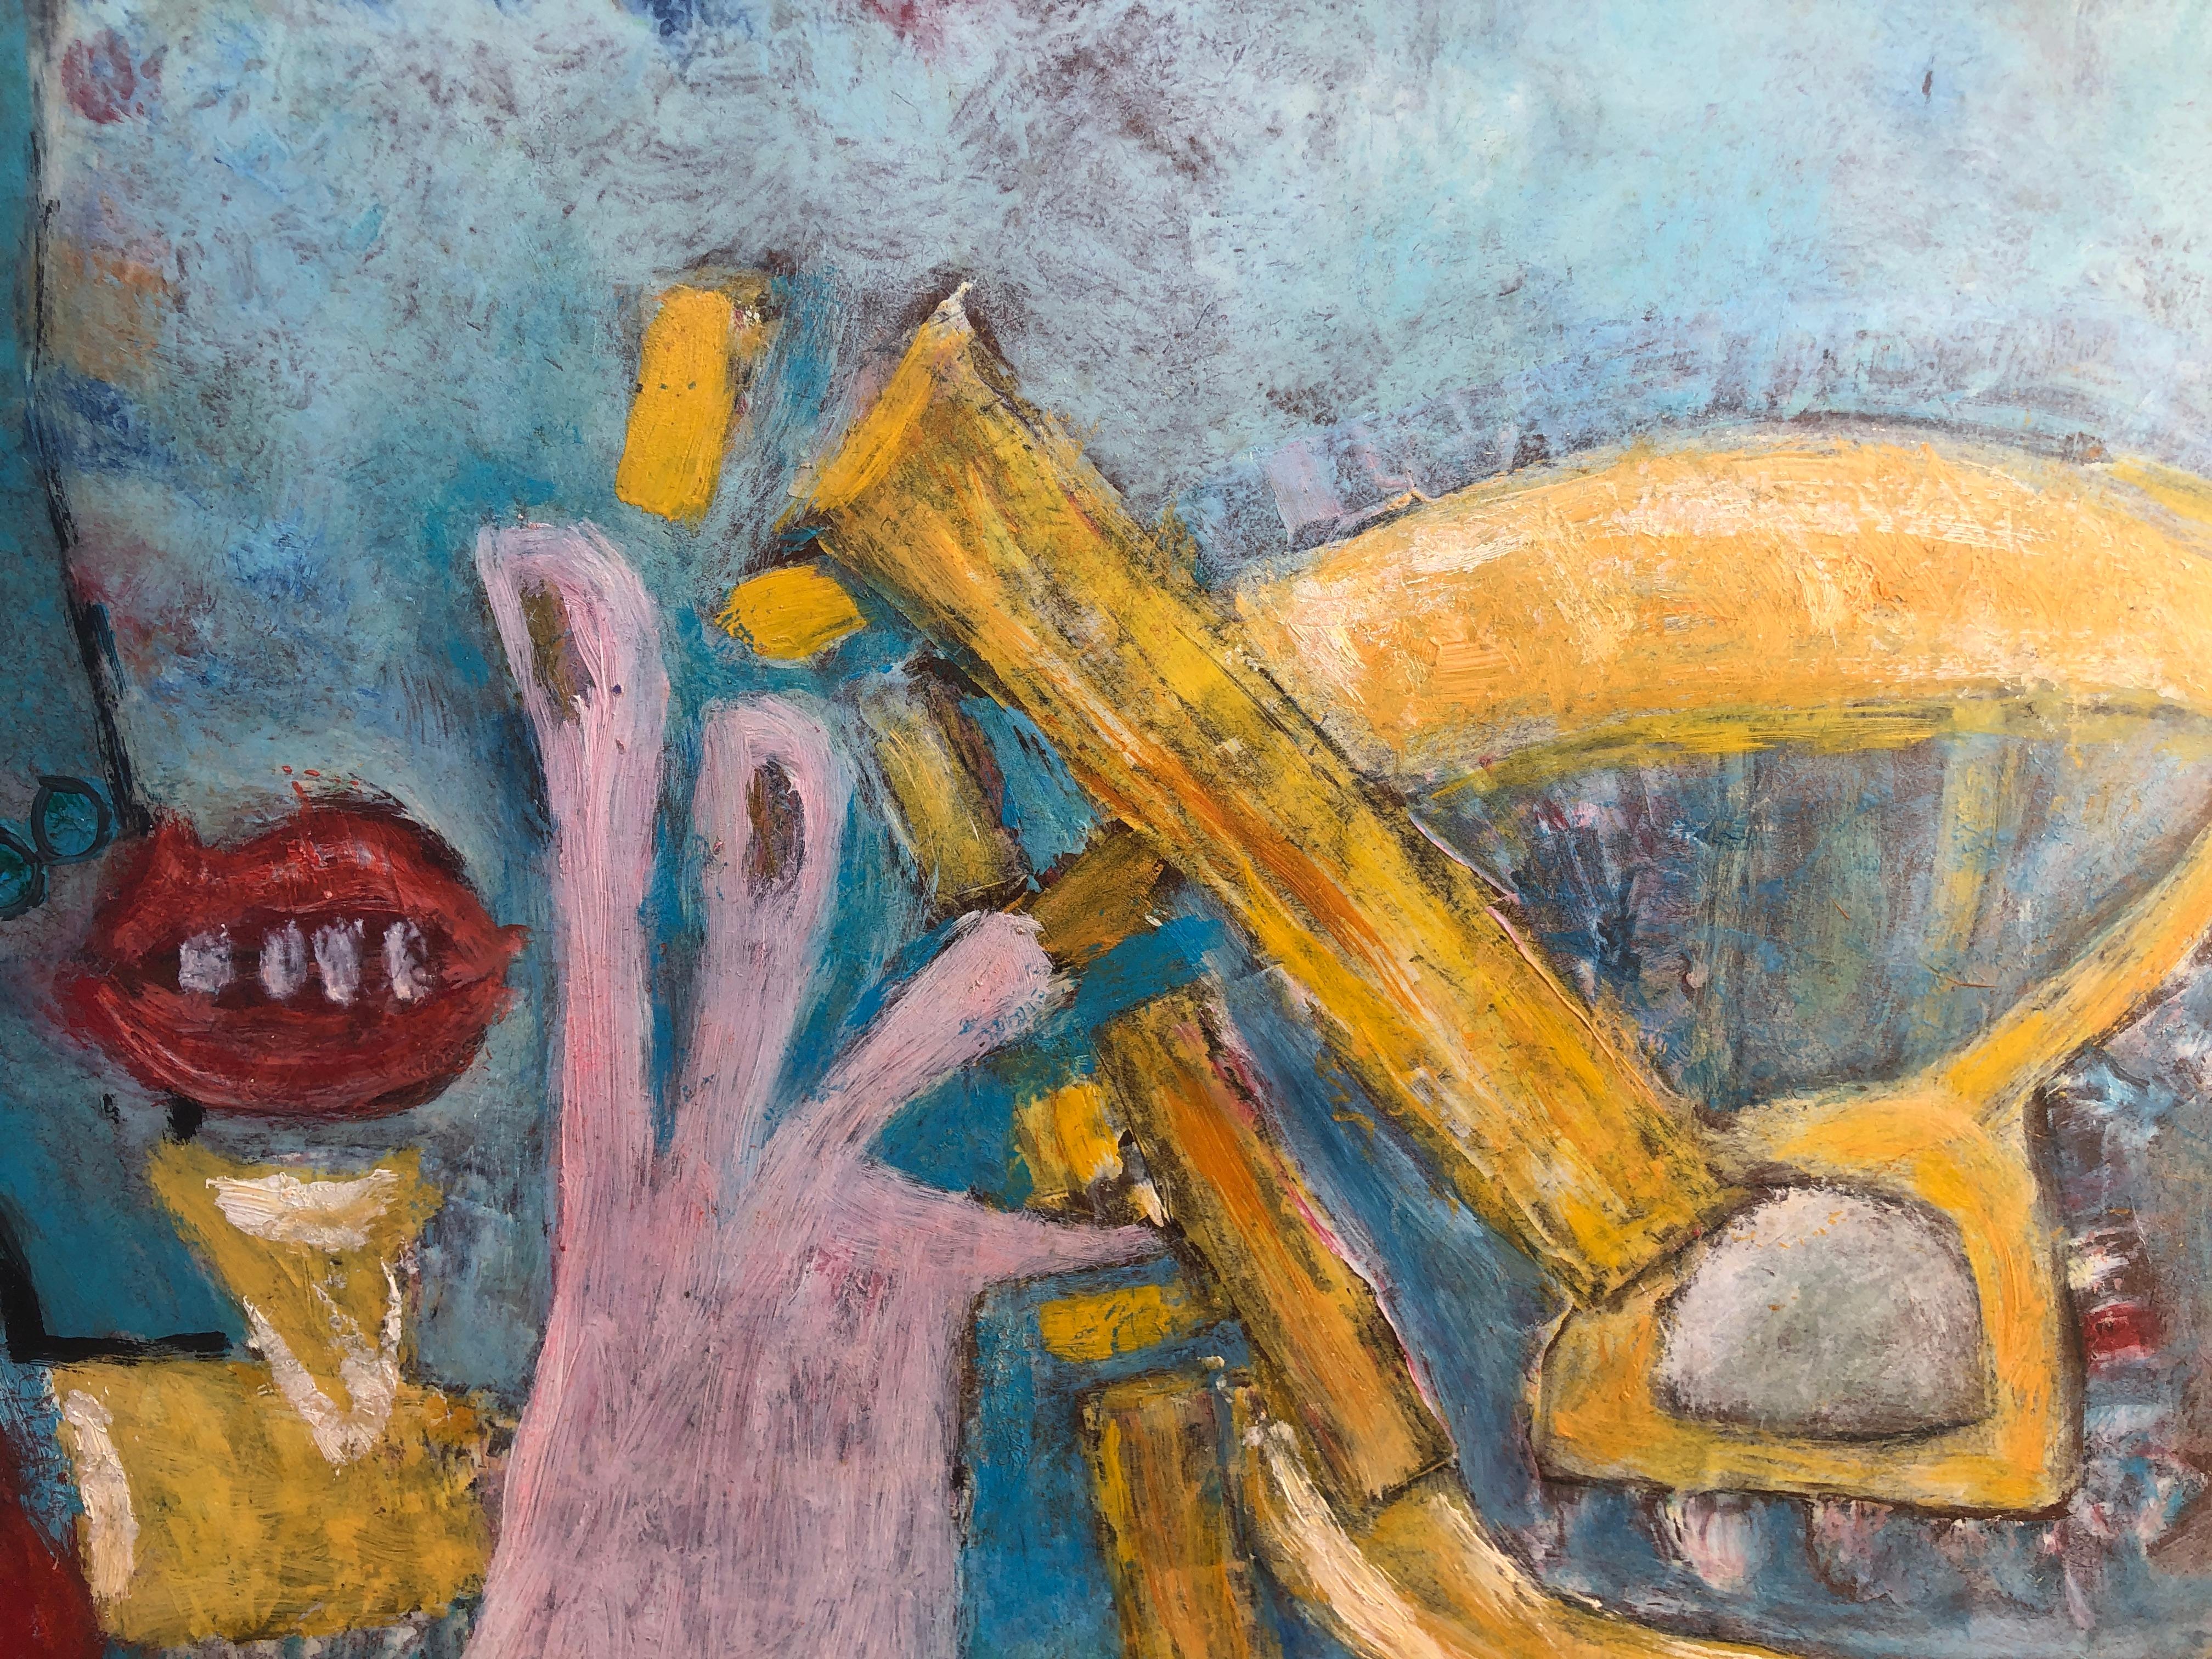 Gustavo Úbeda (1930-1994) - Scène surréaliste, Brésil - Huile sur panneau
L'huile mesure 61x91 cm.
Sans cadre.

Le tableau de Gustavo Úbeda Romero (Herencia, 1930 - Sao Paulo, 1994) est issu d'une famille de peintres par esthétique et par parenté.